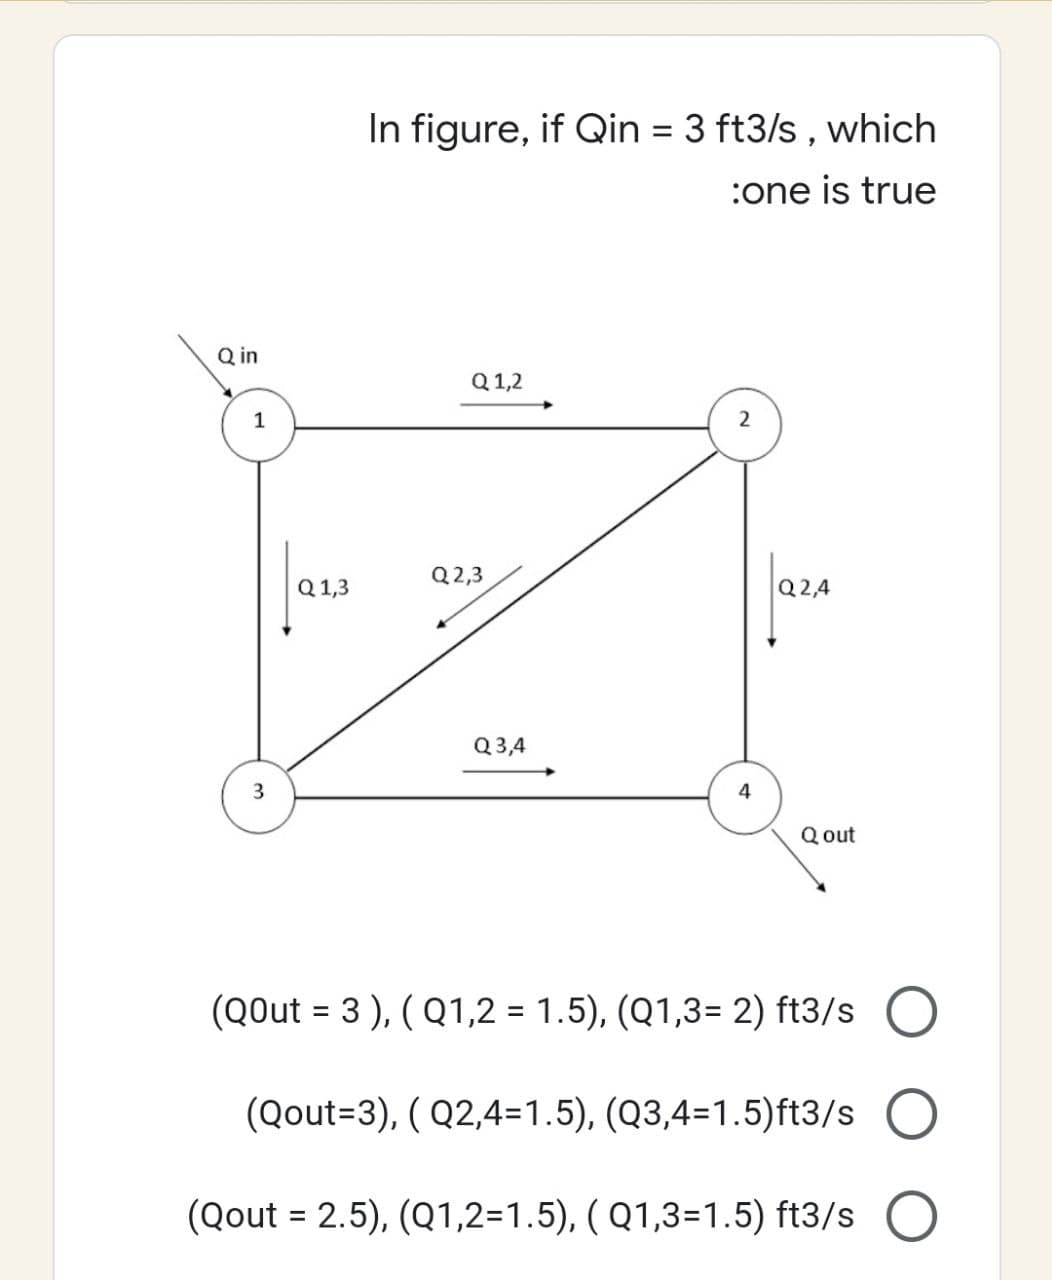 Q in
1
Q 1,3
In figure, if Qin = 3 ft3/s, which
:one is true
Q 1,2
2
Q2,3
Q2,4
Q3,4
3
Qout
(QOut = 3), (Q1,2 = 1.5), (Q1,3= 2) ft3/s
(Qout=3), ( Q2,4=1.5), (Q3,4=1.5)ft3/s O
(Qout = 2.5), (Q1,2=1.5), (Q1,3=1.5) ft3/s O